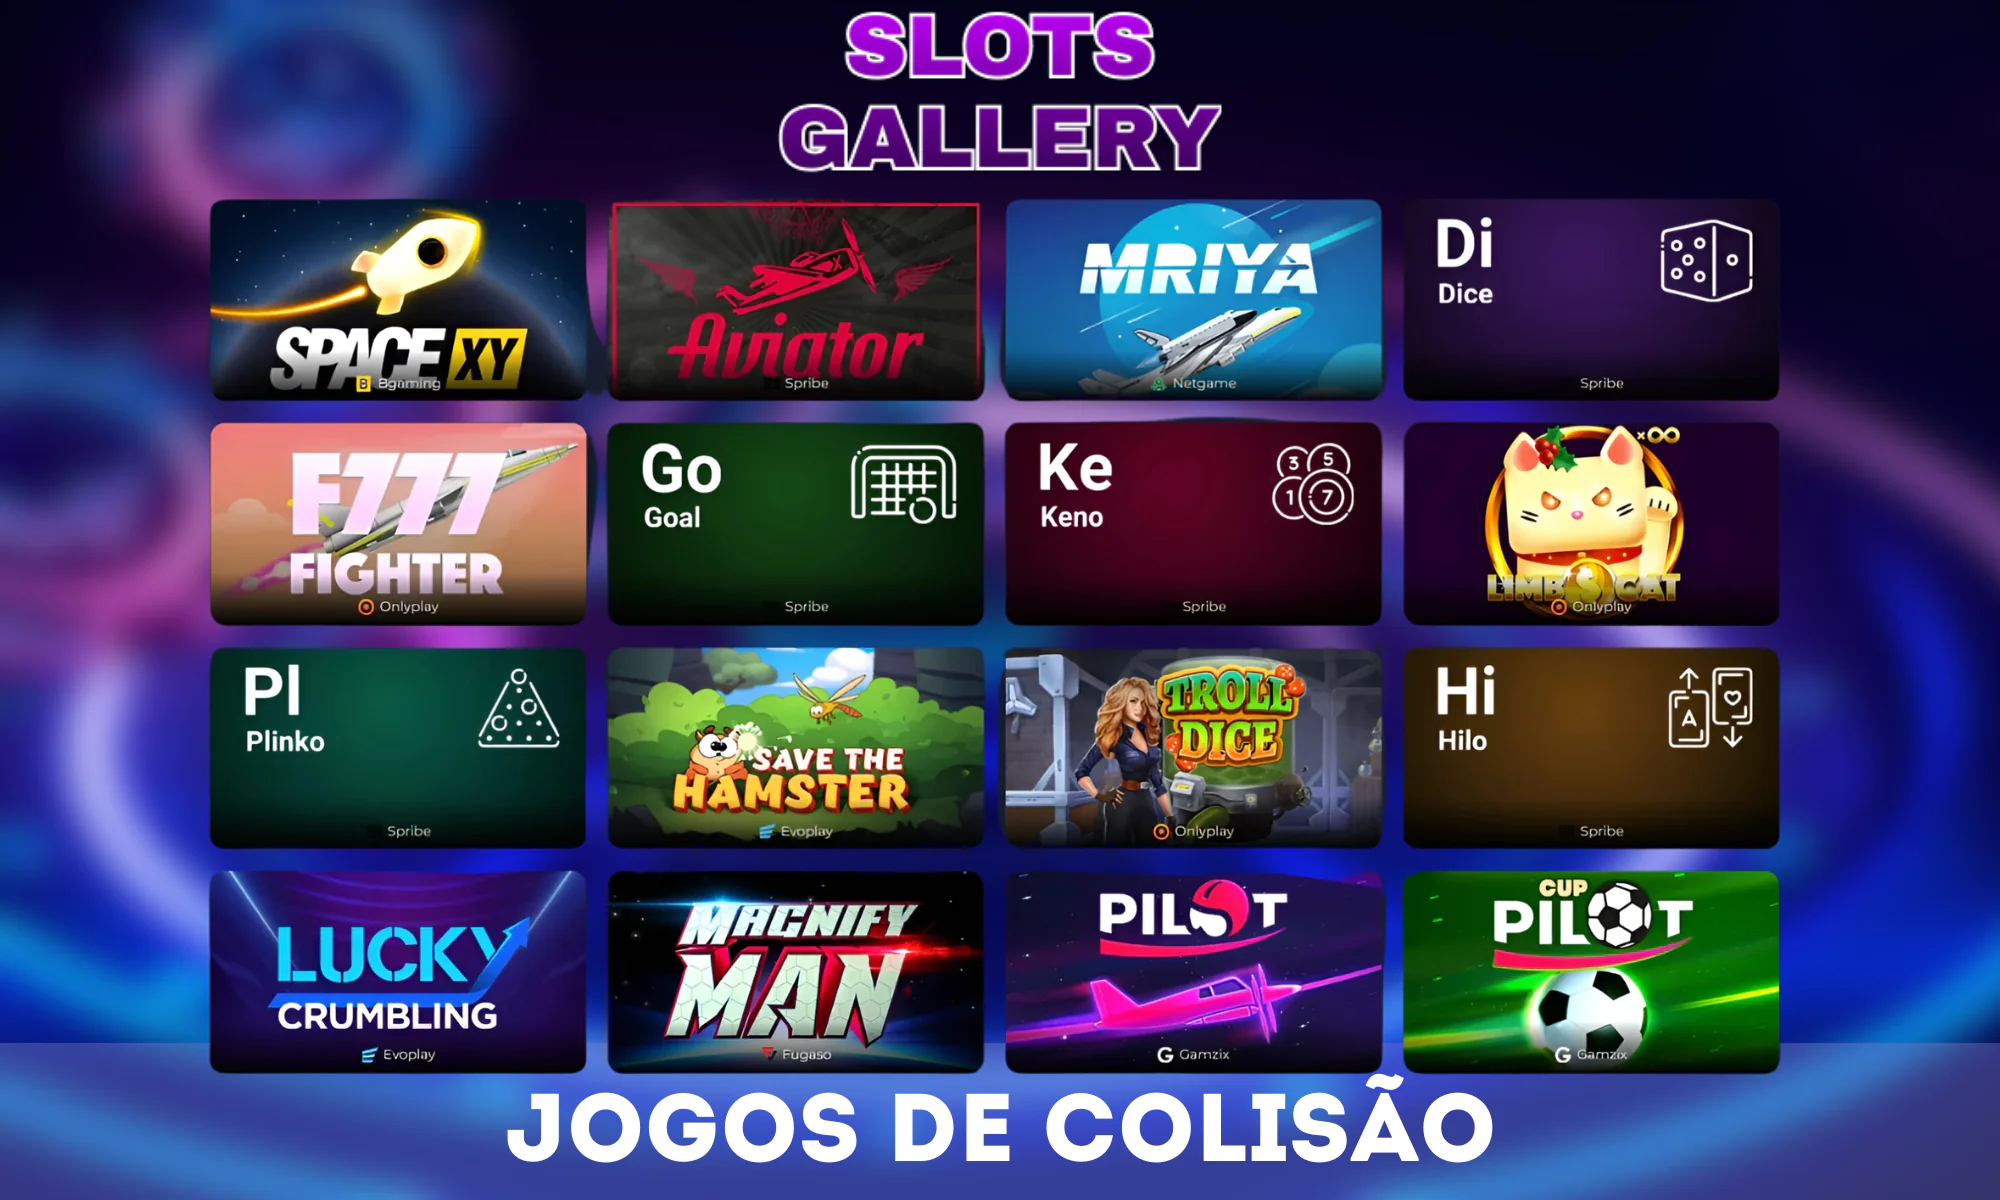 Os jogos de colisão são um destaque no Slots Gallery Casino